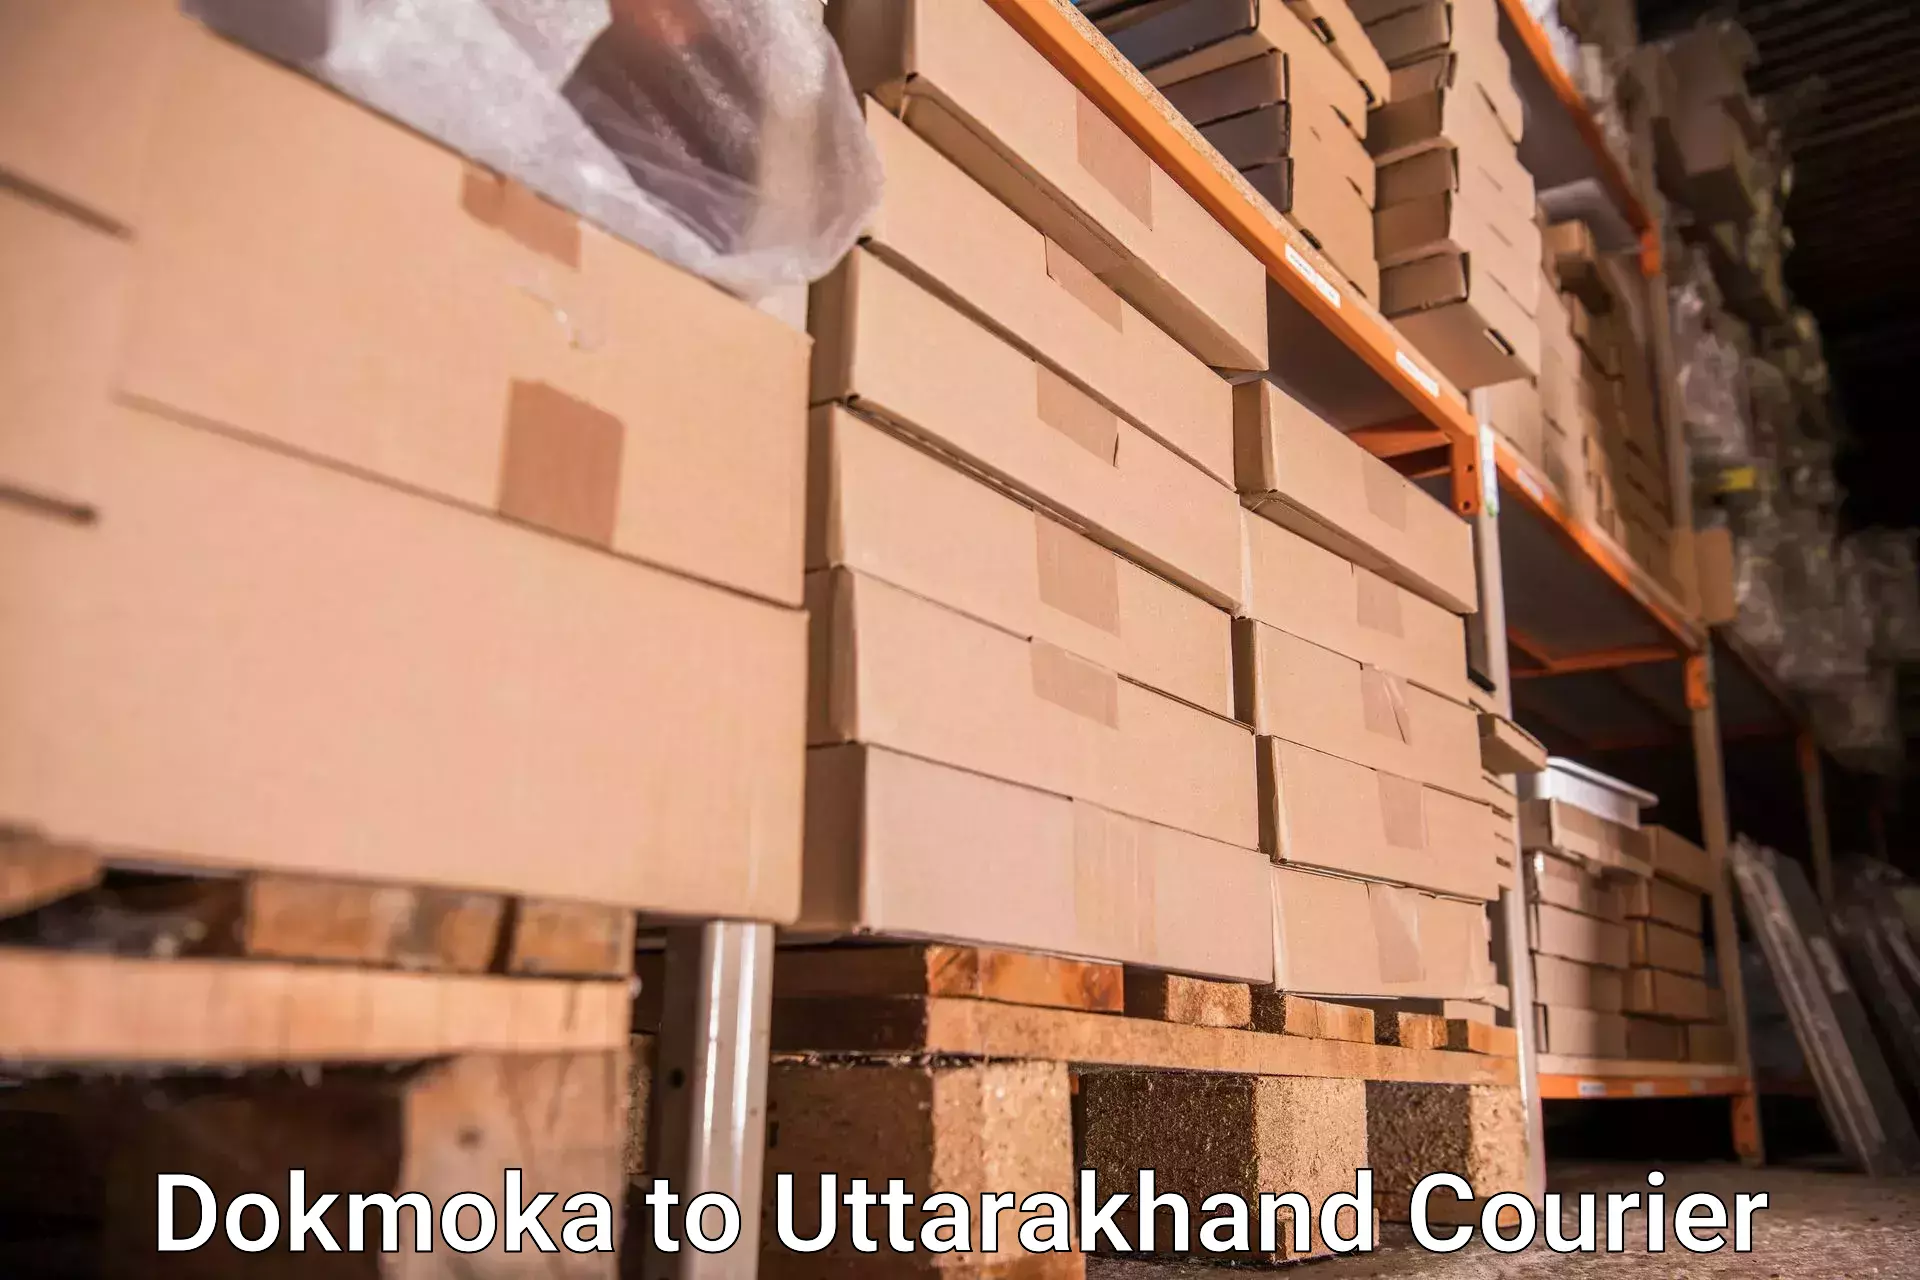 Baggage transport coordination Dokmoka to IIT Roorkee